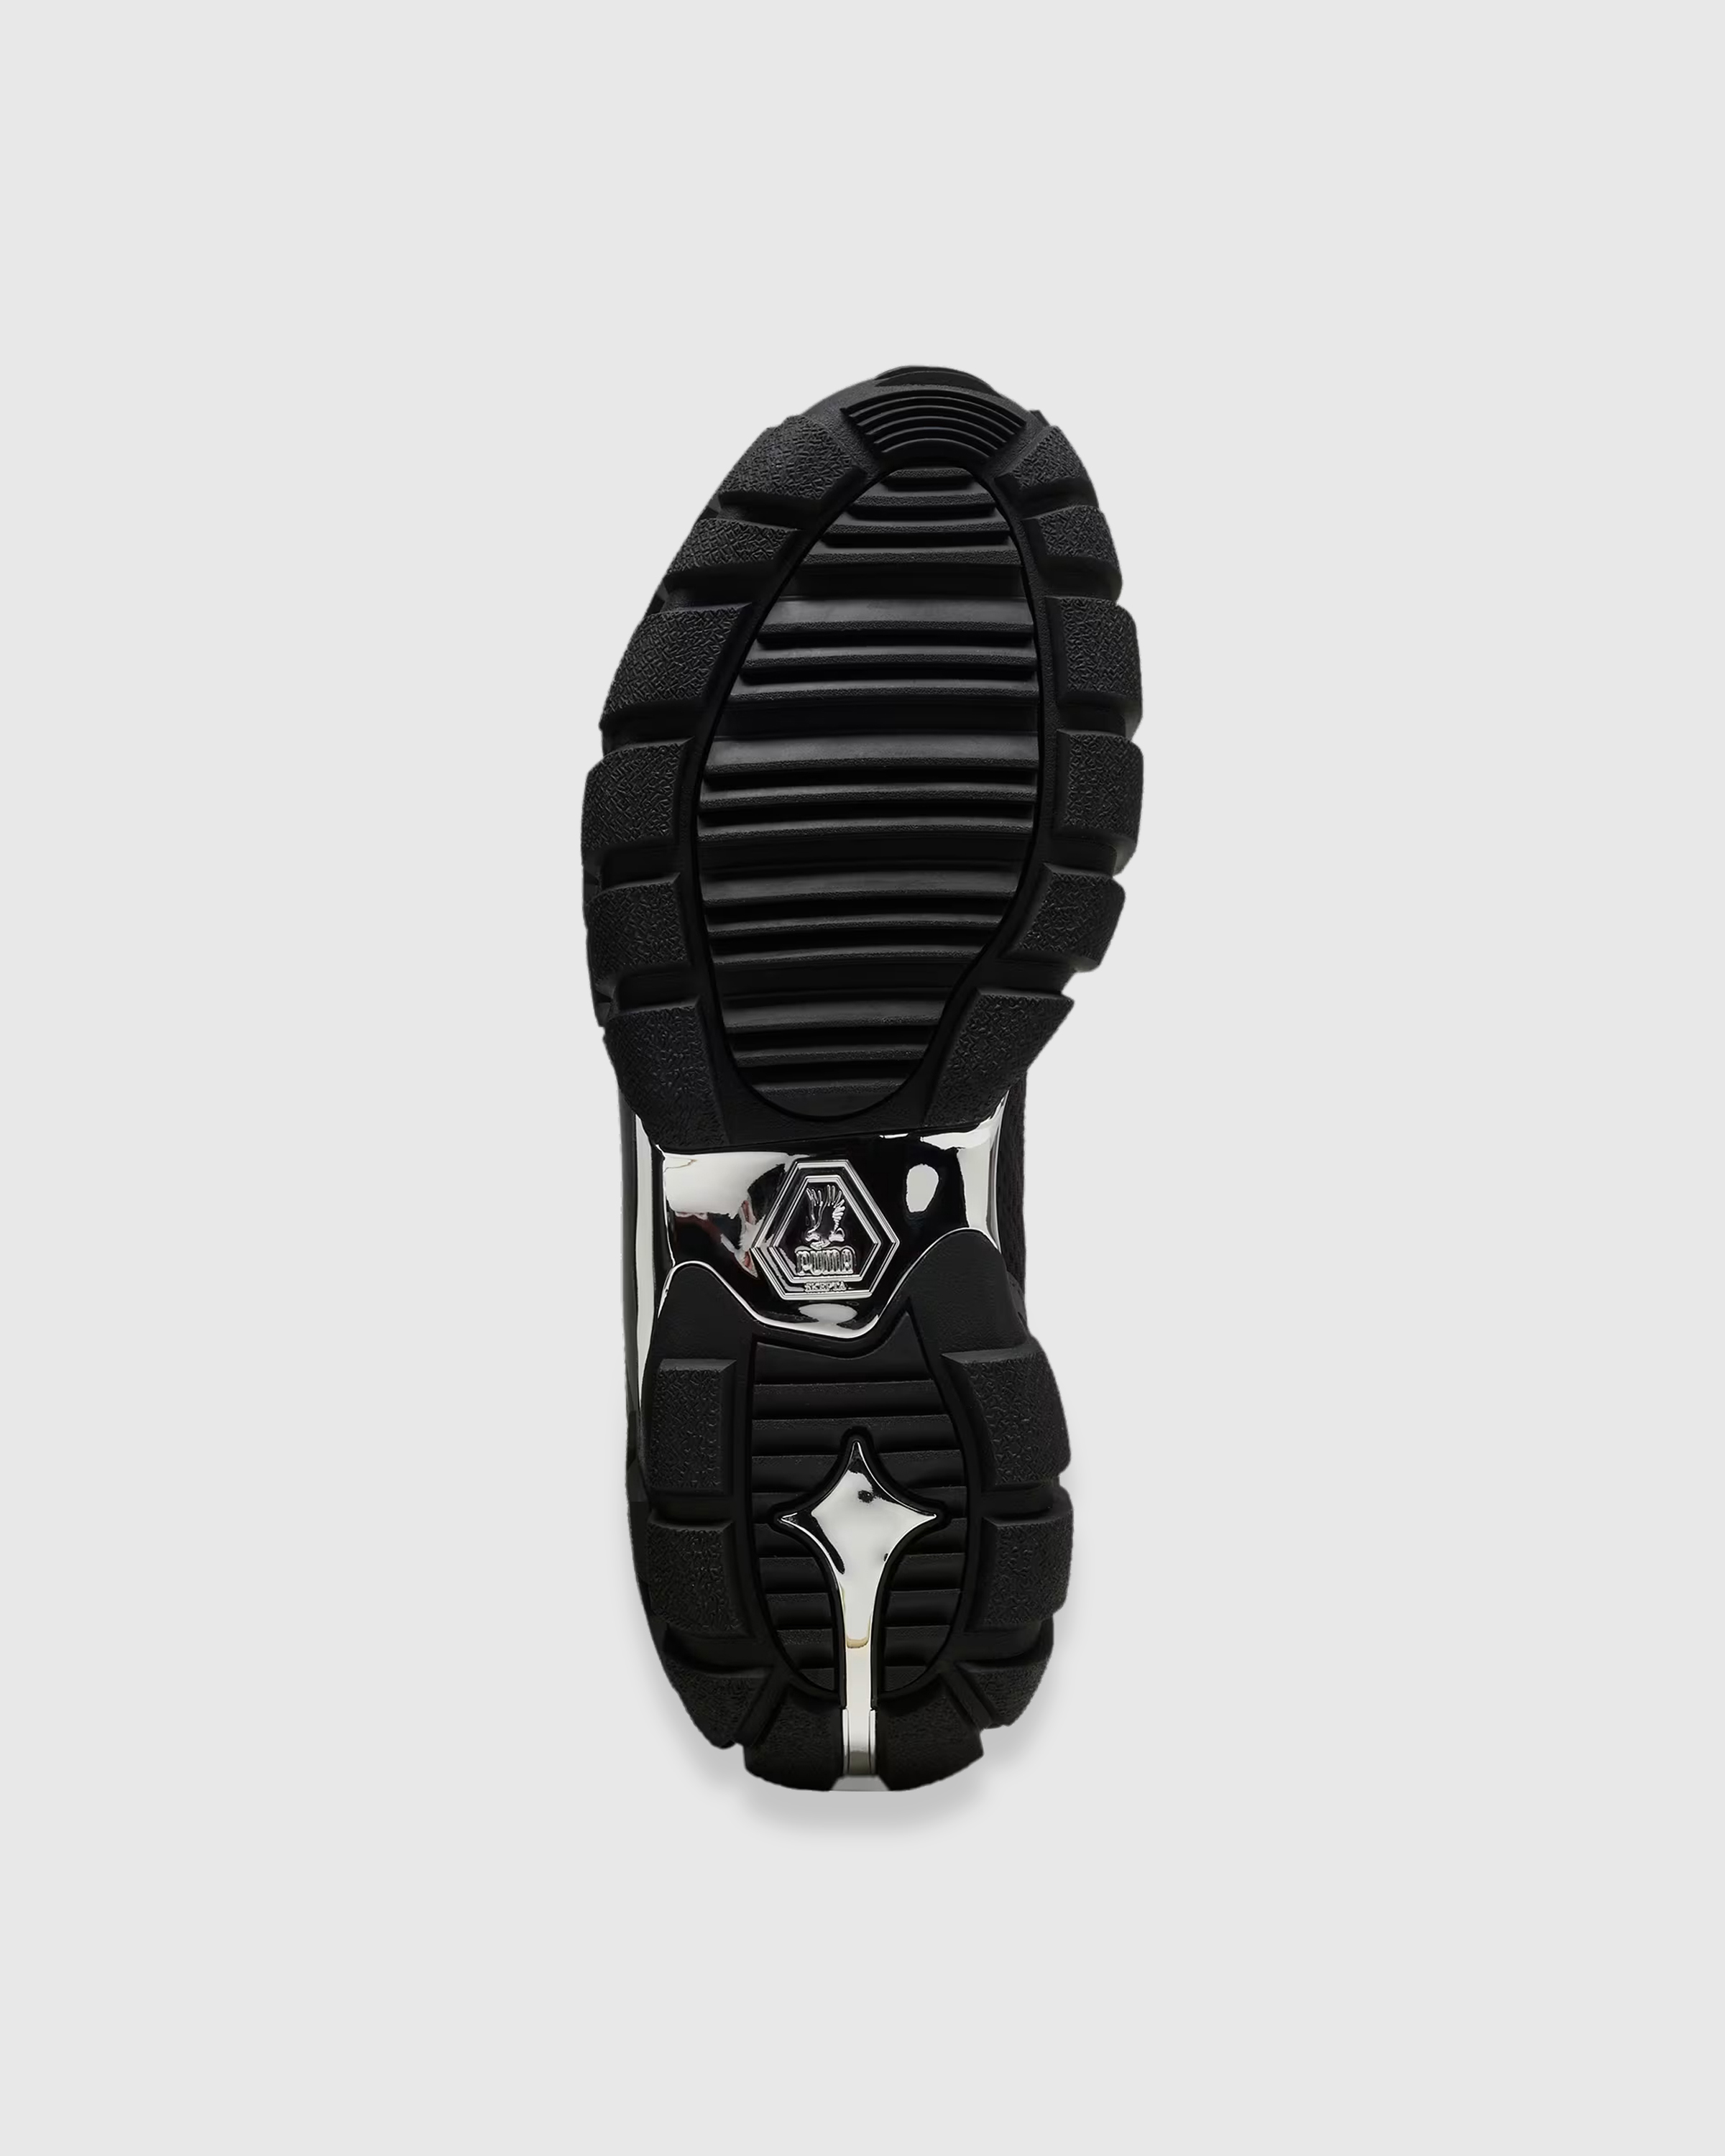 Puma x Skepta – Skope Forever Black - Low Top Sneakers - Black - Image 6